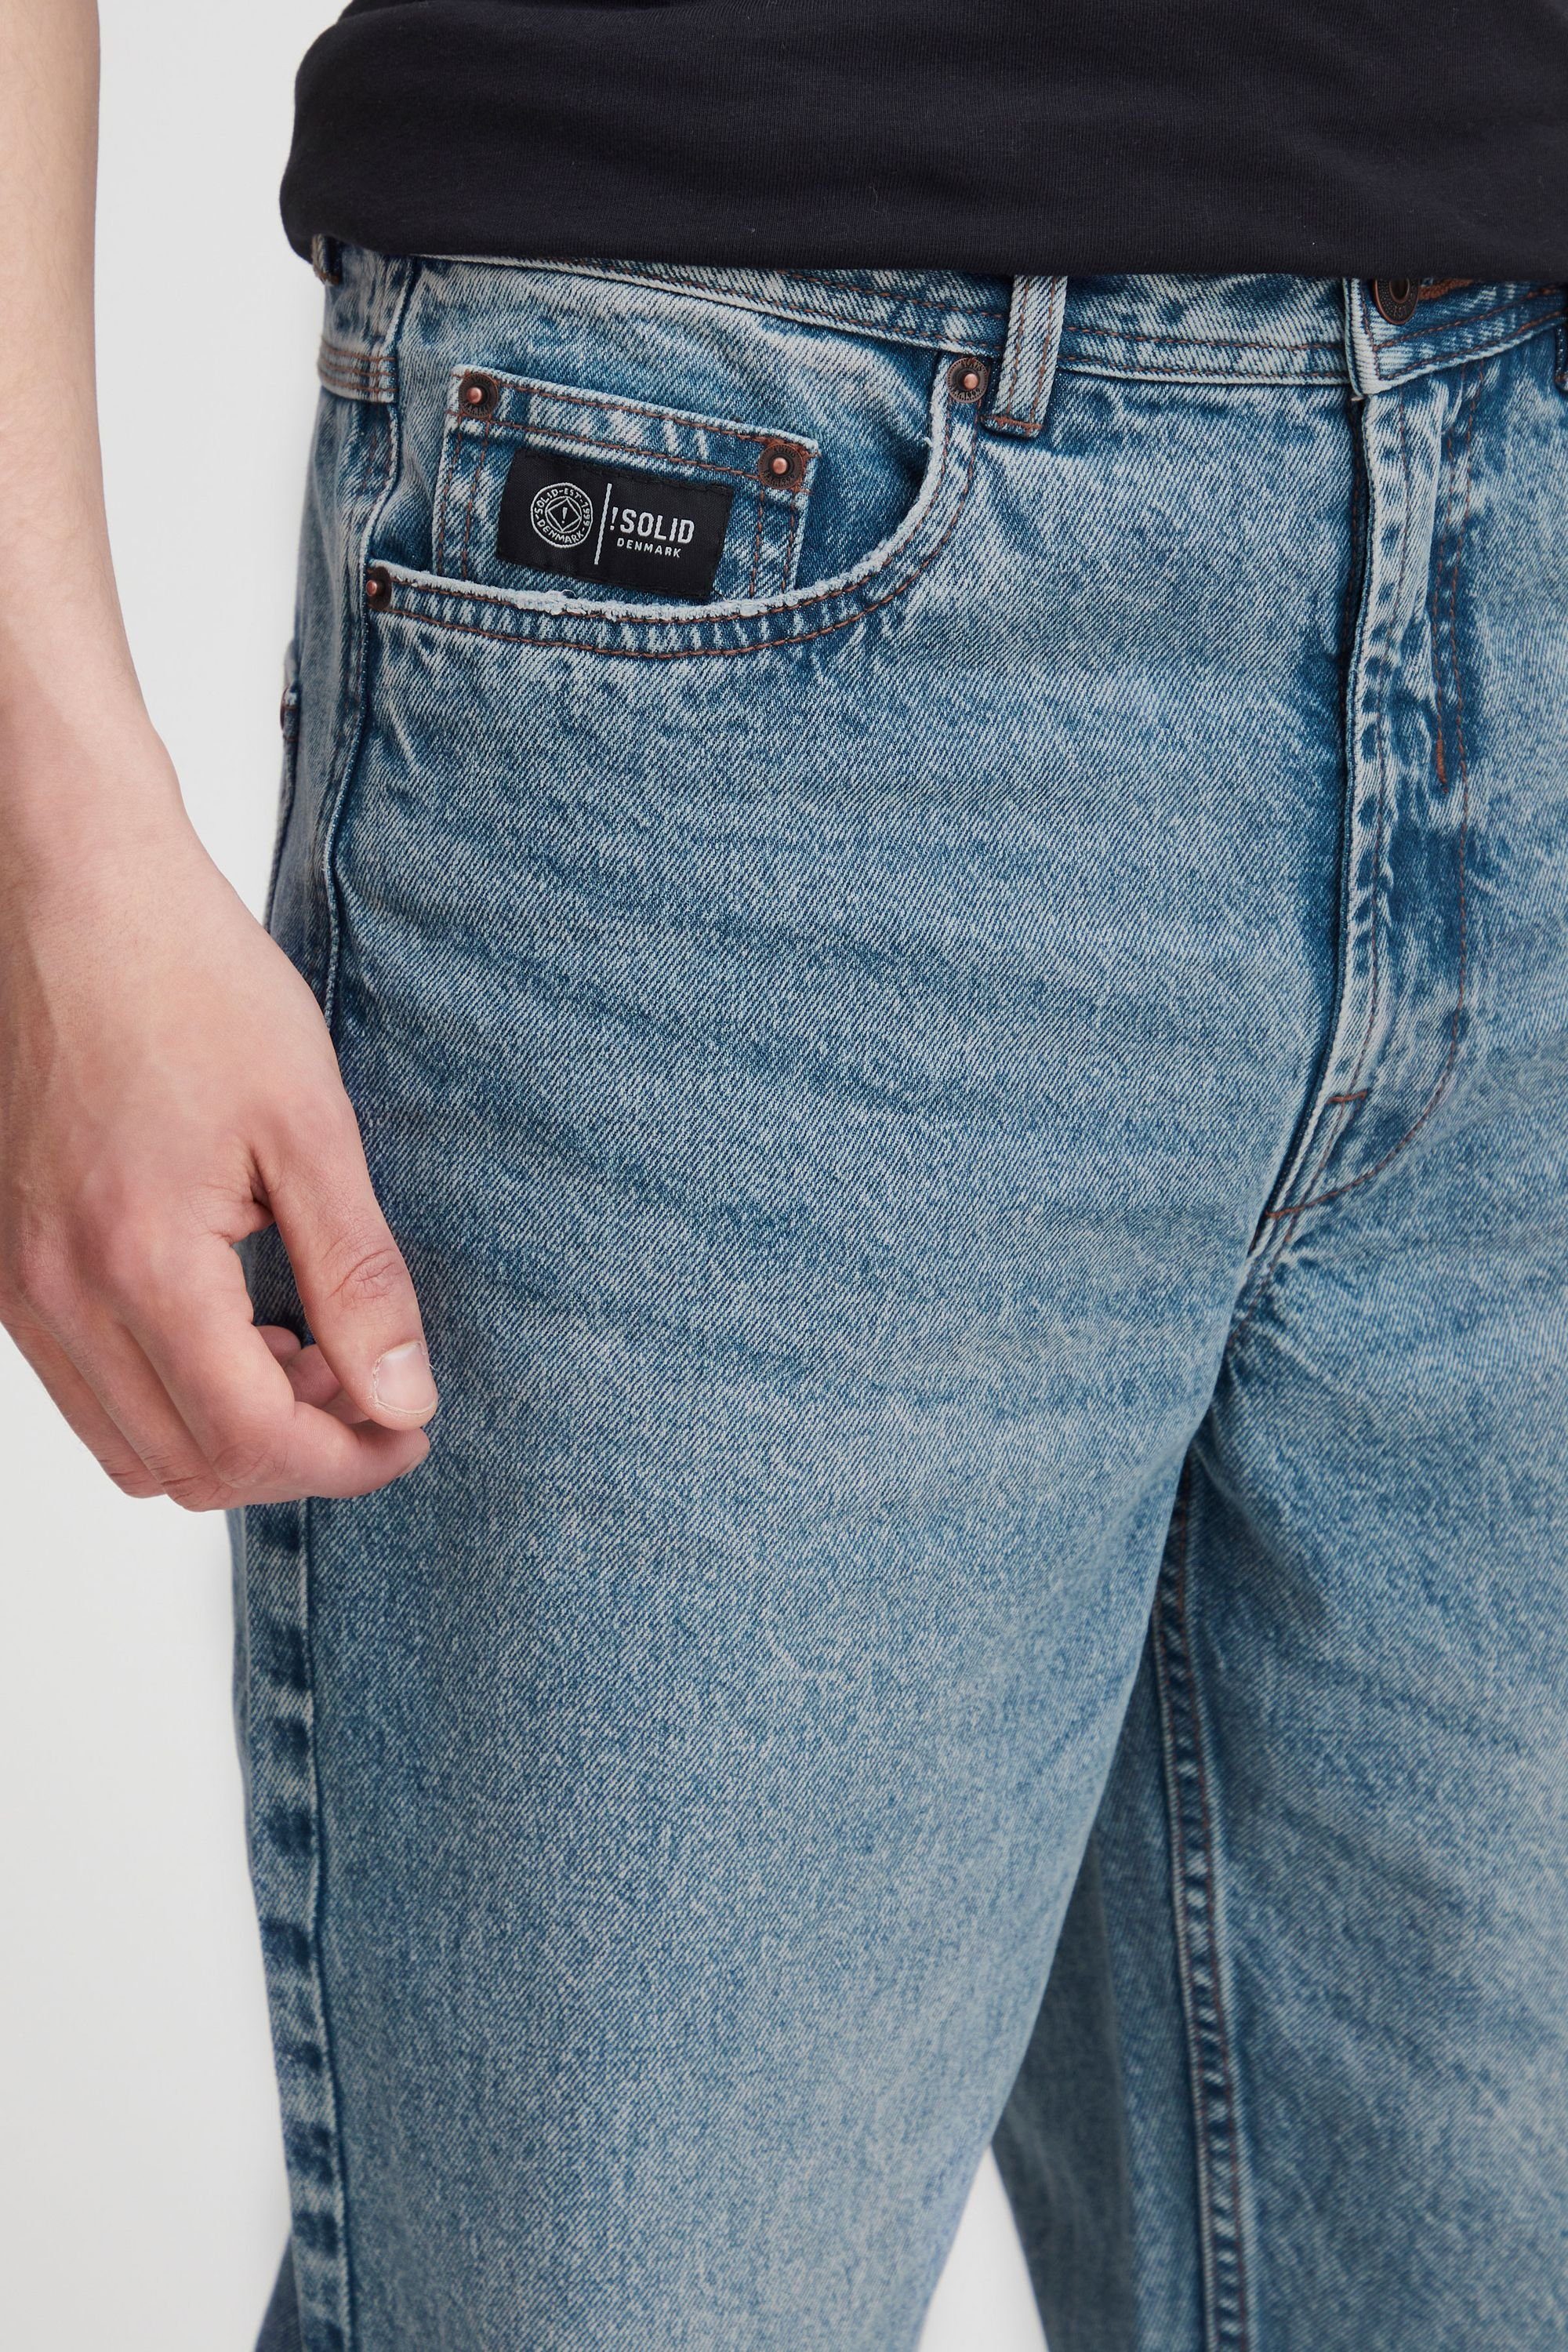 Solid 5-Pocket-Jeans SDHoffmann Middle (700030) Blue Vintage Denim